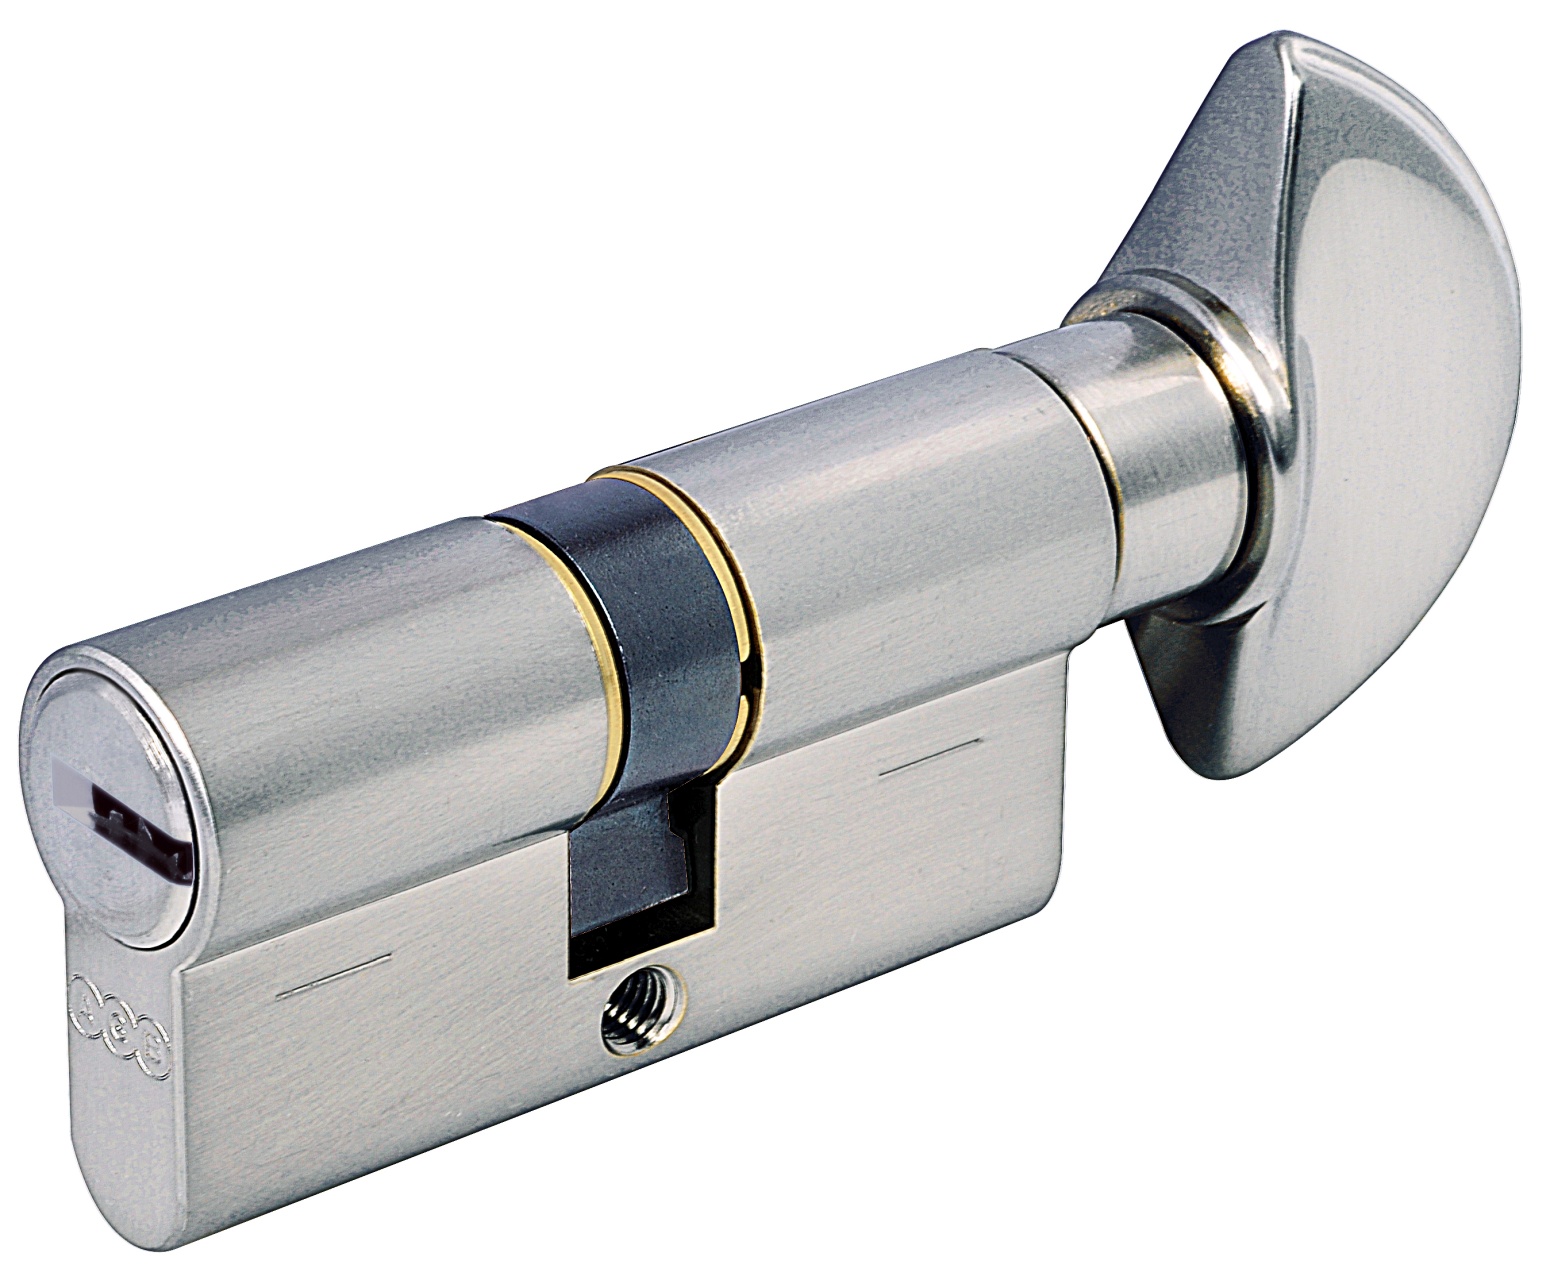 AGB -  Cilindro SCUDO 5000 PS frizionato anti bamping con chiave e pomolo - col. LUCIDO VERNICIATO - lunghezza 100 - misura P-45-10-45